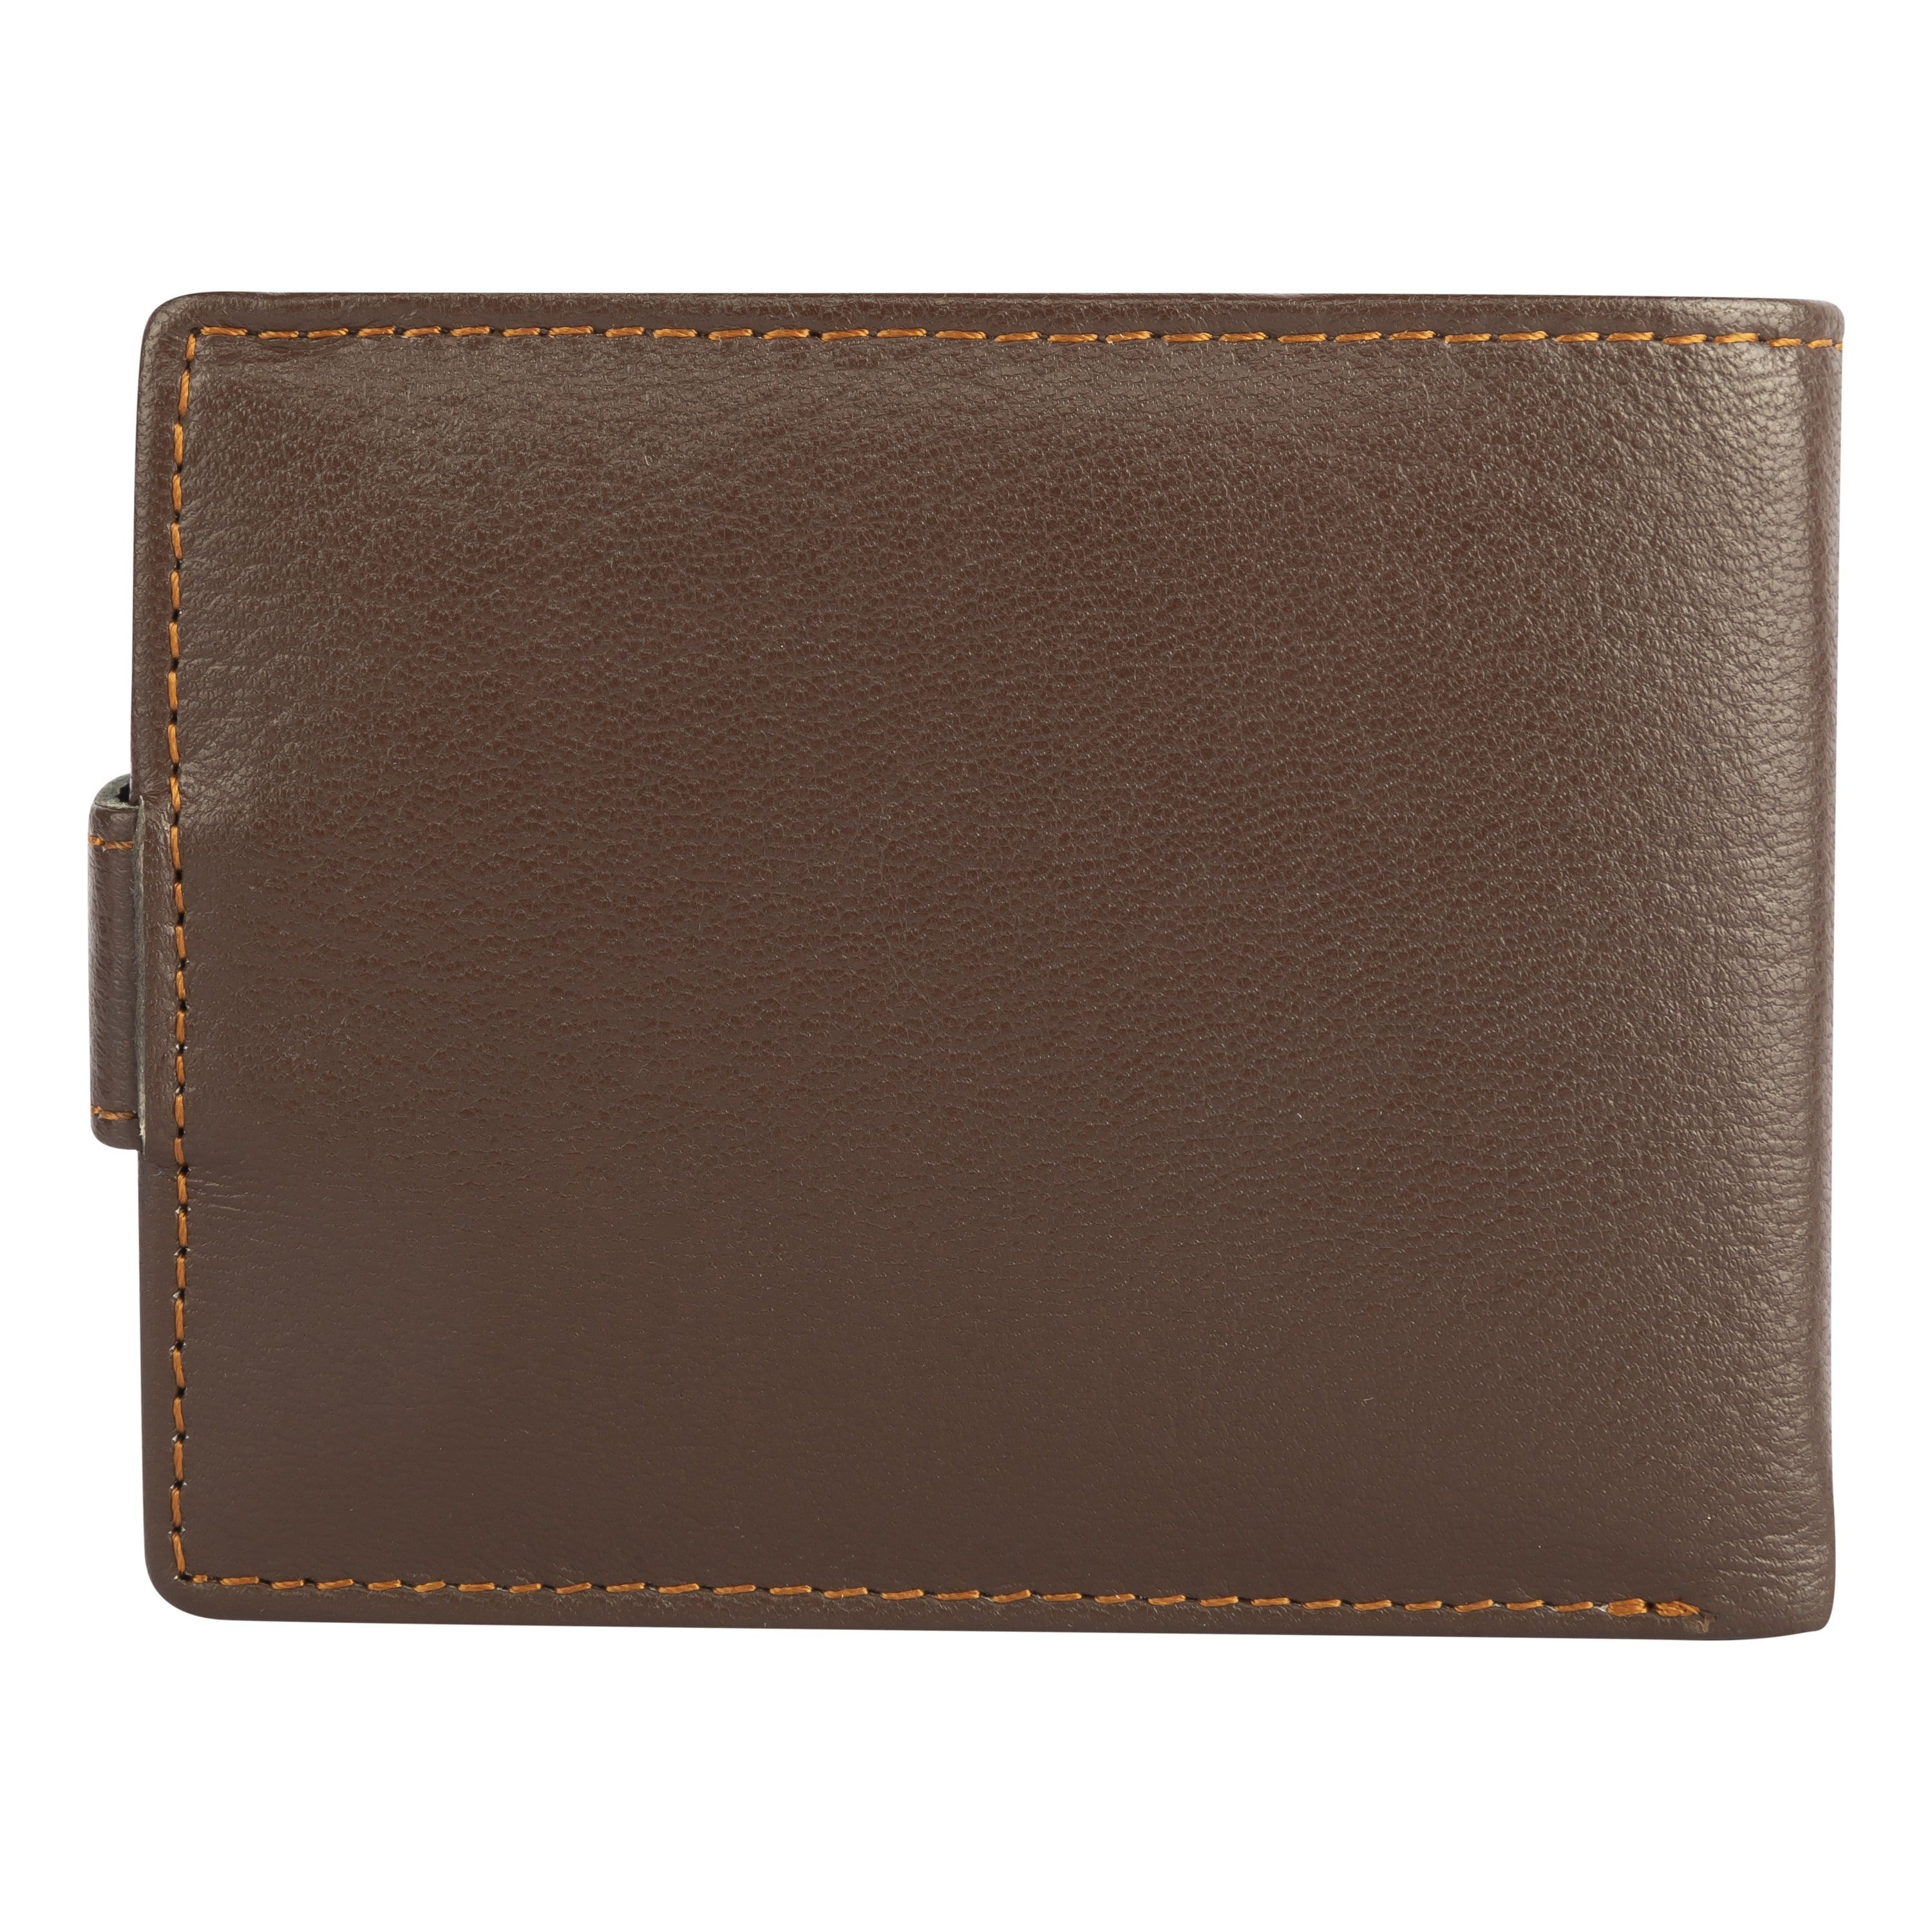 kinnoti RFID Genuine Leather Brown Wallet